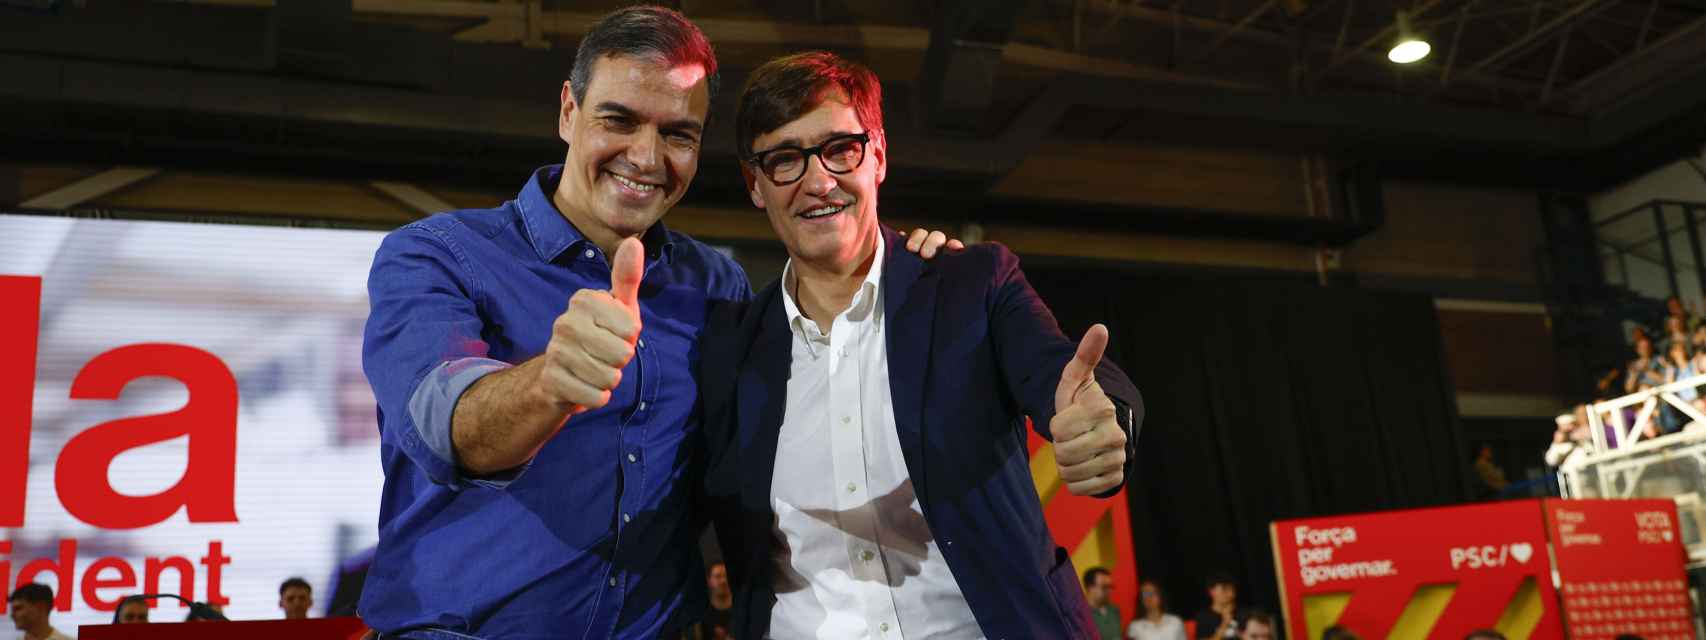 Pedro Sánchez, presidente del Gobierno, en un mitin de la campaña del 12-M, con Salvador Illa, líder del PSC.